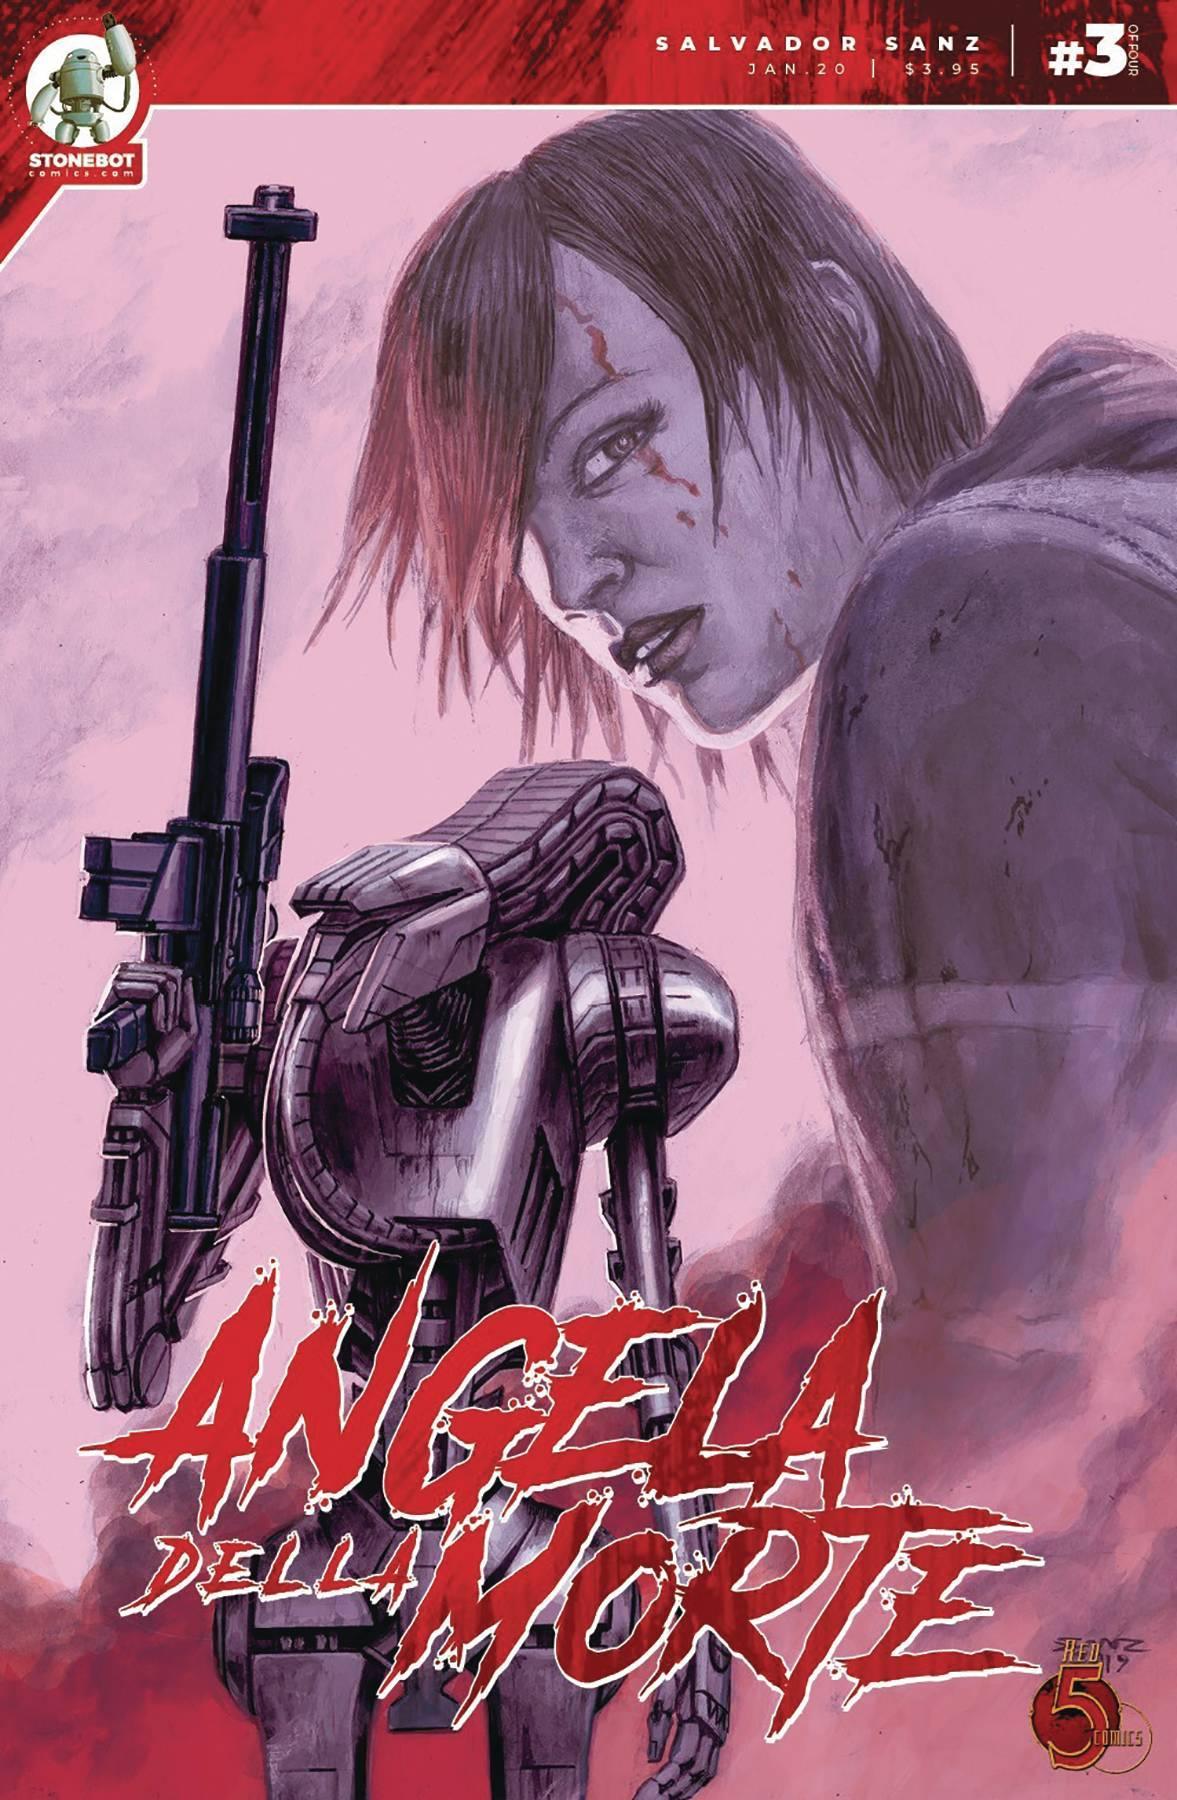 ANGELA DELLA MORTE #3 - Kings Comics